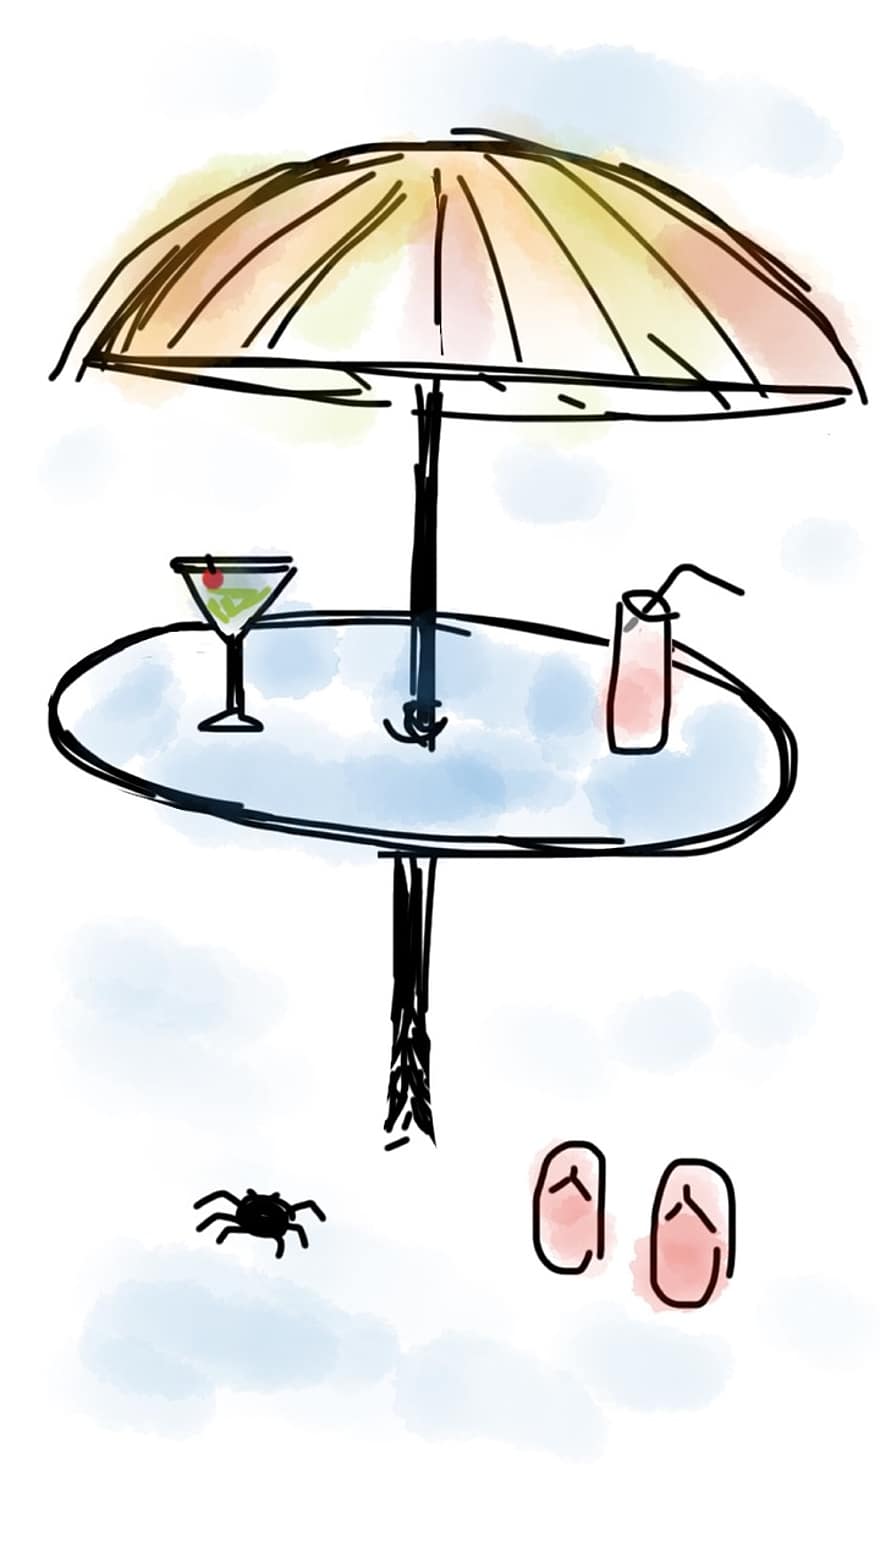 plajă, umbrelă, băutură, Martini, băutură răcoritoare, masa, însorit, umbrela de plaja, nisip, concediu de odihna, vară